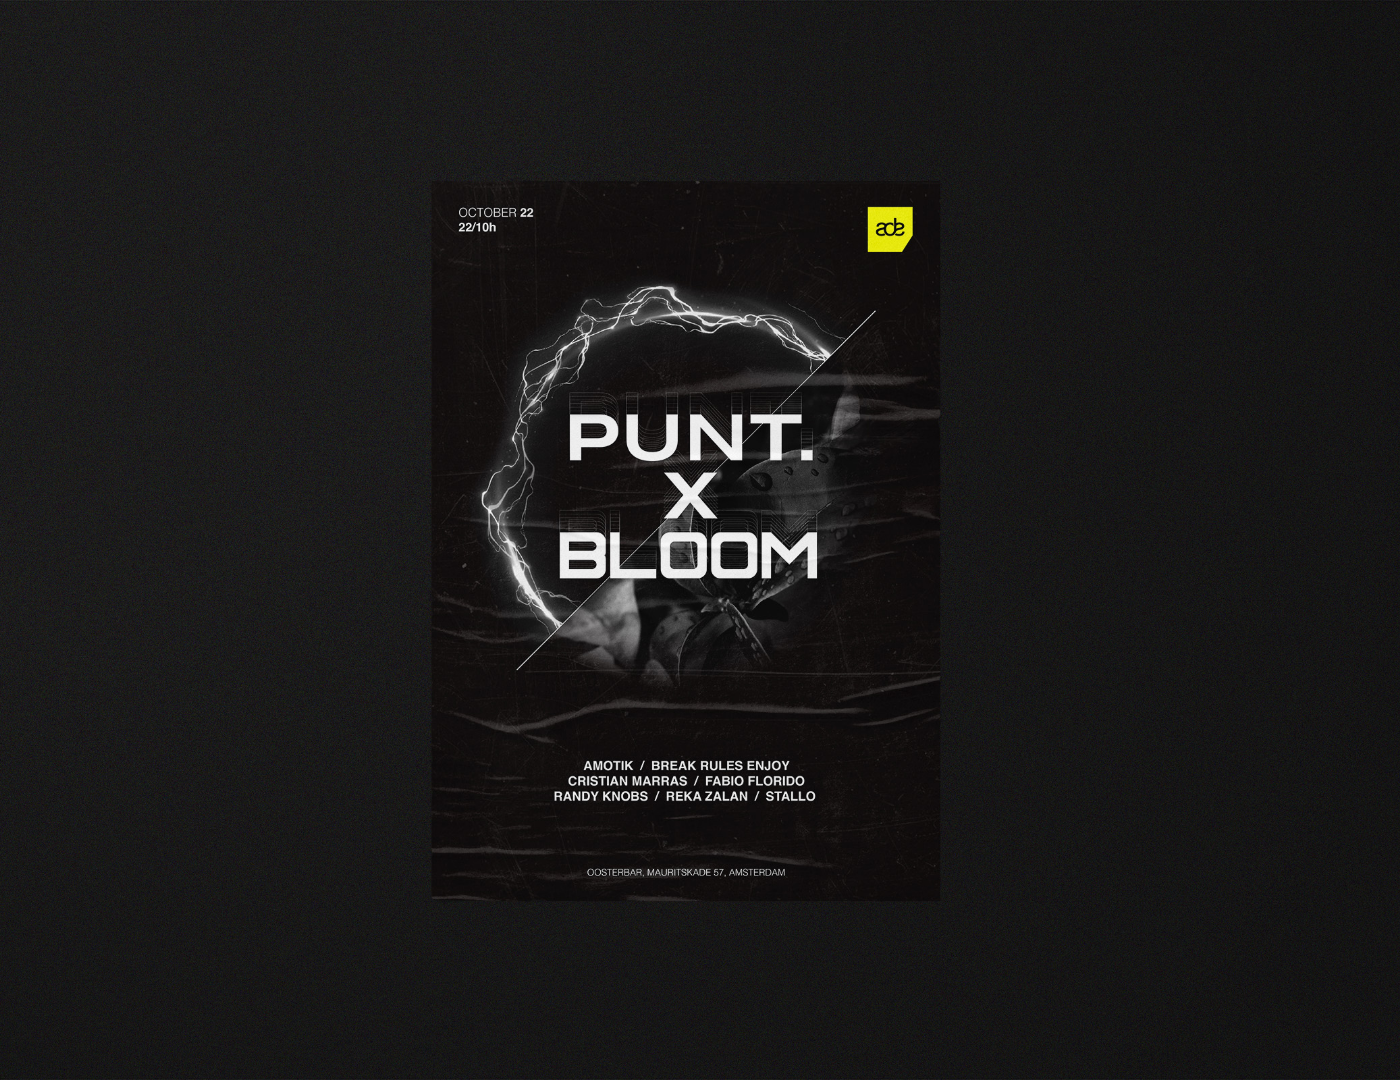 Punt x bloom Poster